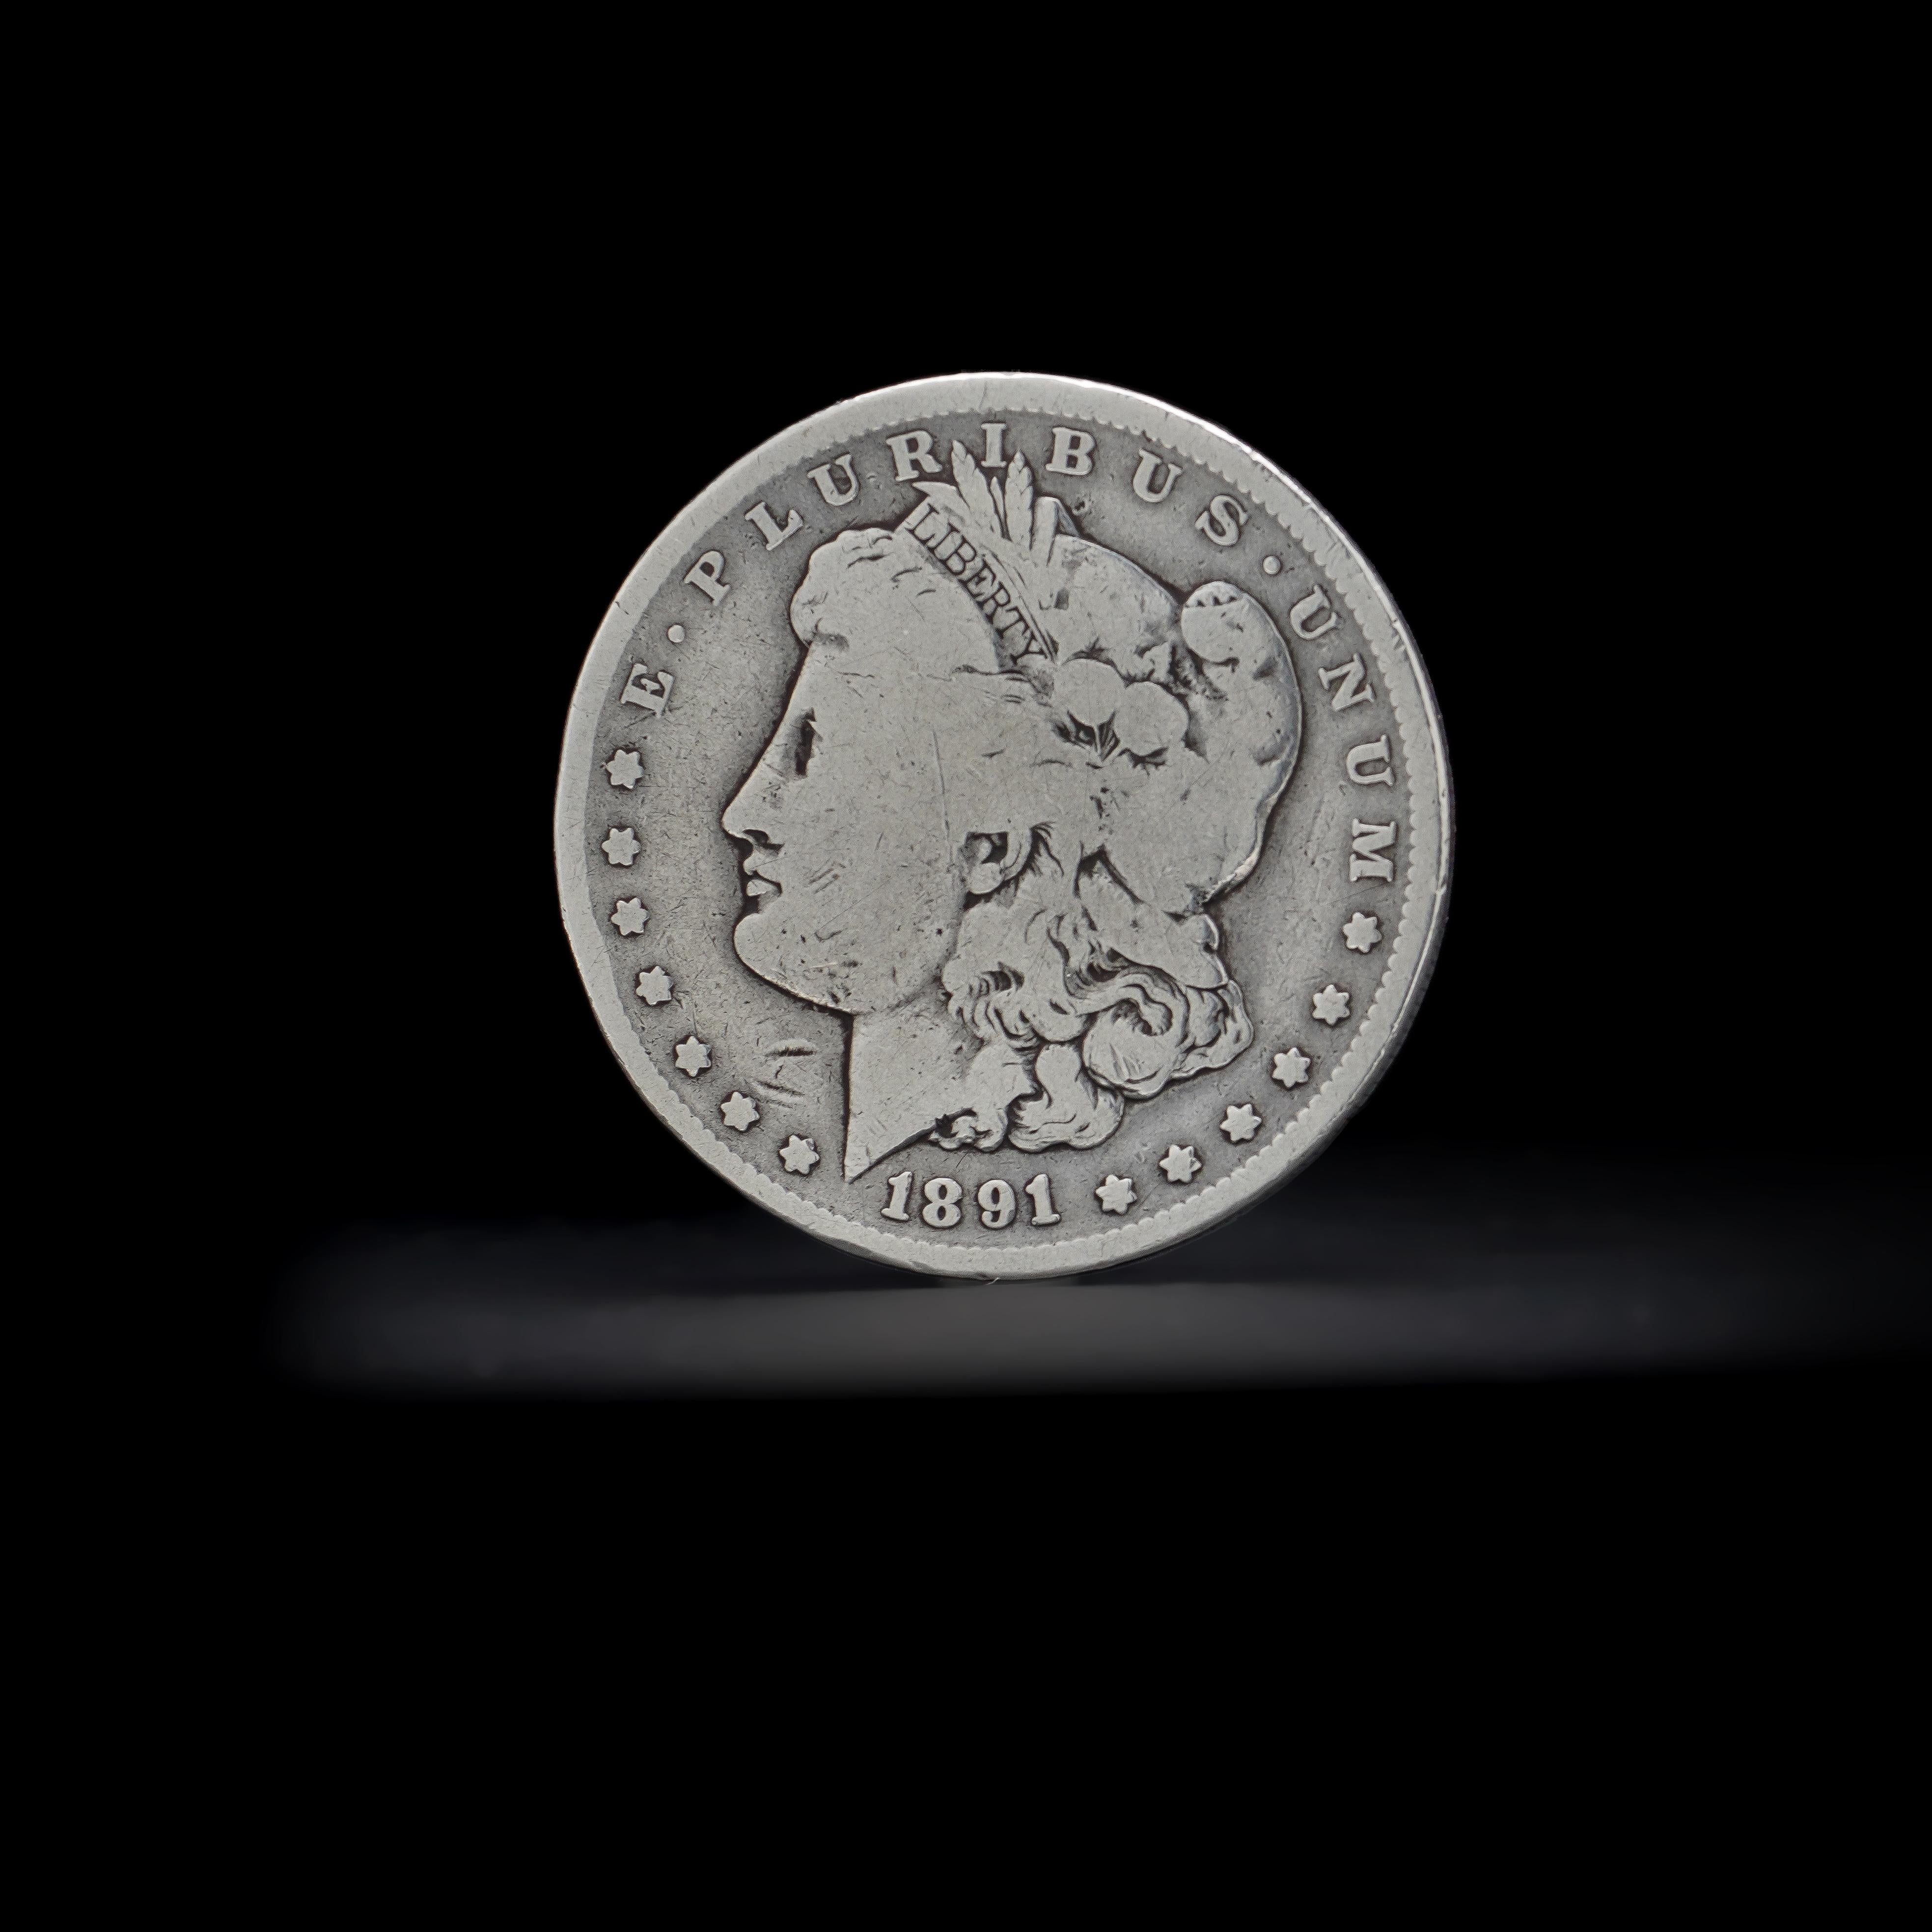 1891 o silver dollar value